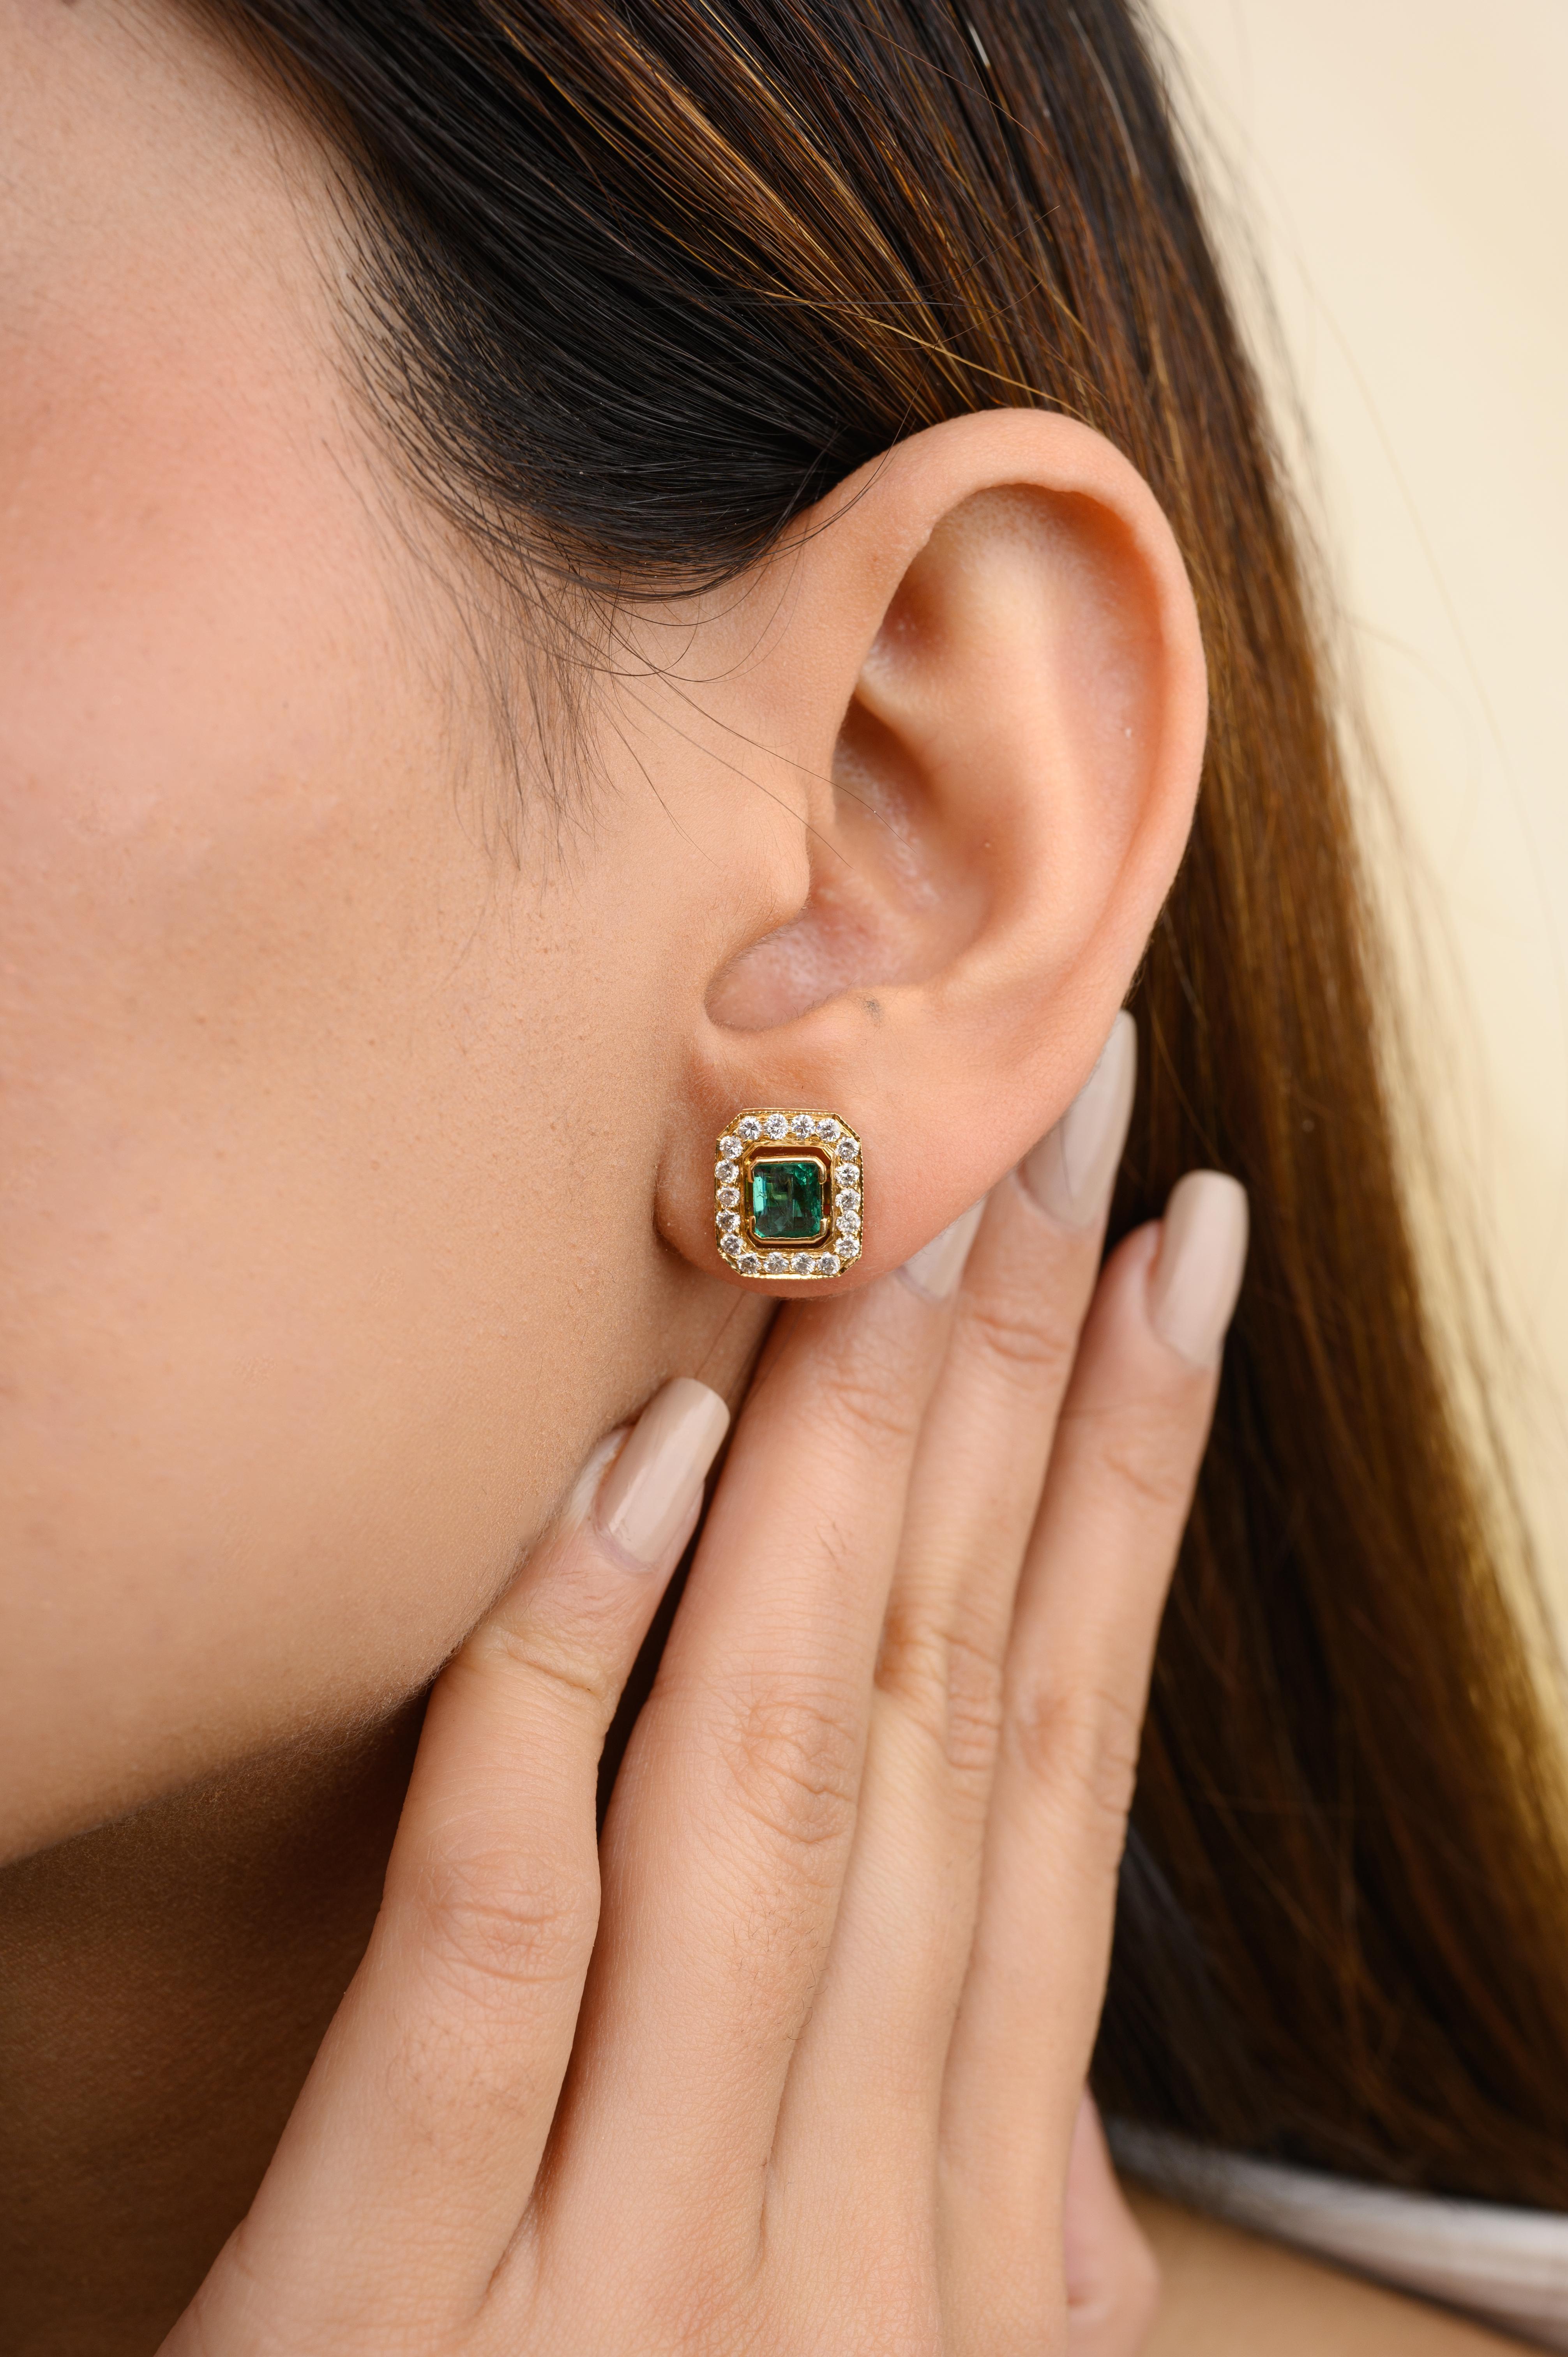 Große Ohrstecker mit Smaragd und Diamant im Achteckschliff aus 18 Karat Gold, um Ihren Look zu unterstreichen. Sie brauchen Ohrstecker, um mit Ihrem Look ein Statement zu setzen. Diese Ohrringe mit Smaragd im Oktagon-Schliff sorgen für einen